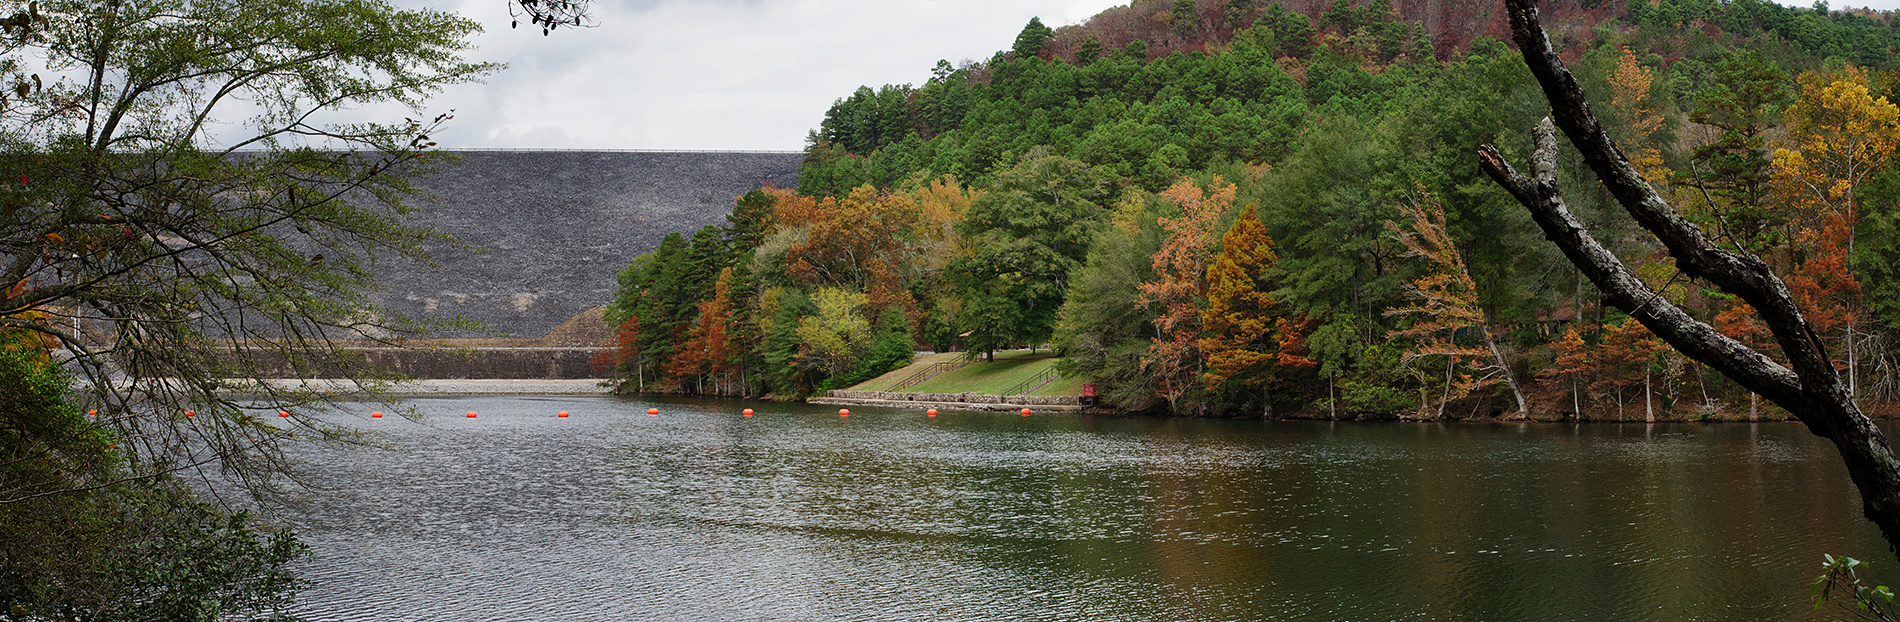 Blakely Dam in November